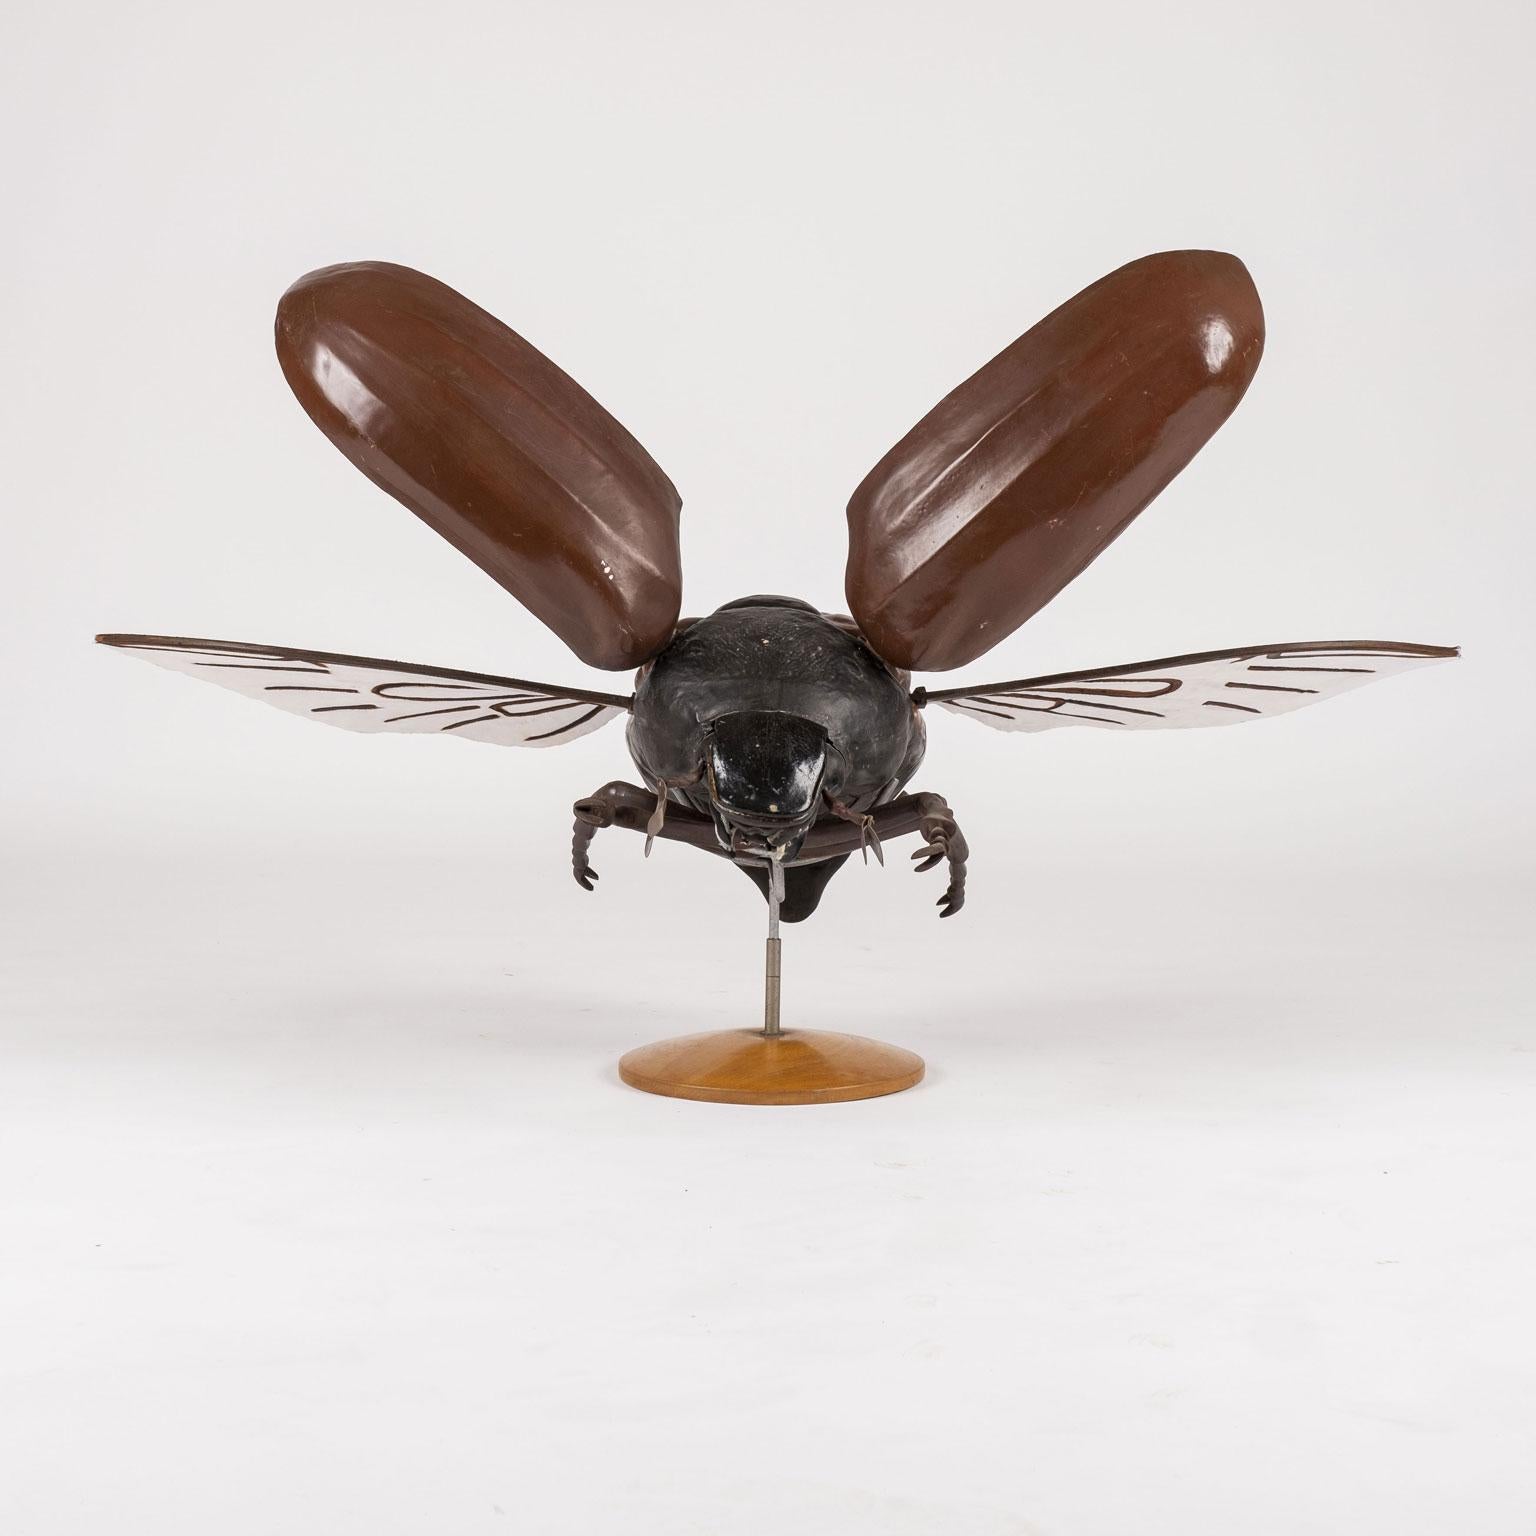 Grande sculpture d'un scarabée en vol. Il s'agit d'un grand modèle réduit (sur le socle d'origine) d'un scarabée utilisé pour l'enseignement de l'anatomie à Prague (vers 1950-1959). Le modèle est fabriqué à la main en papier mâché et en bois